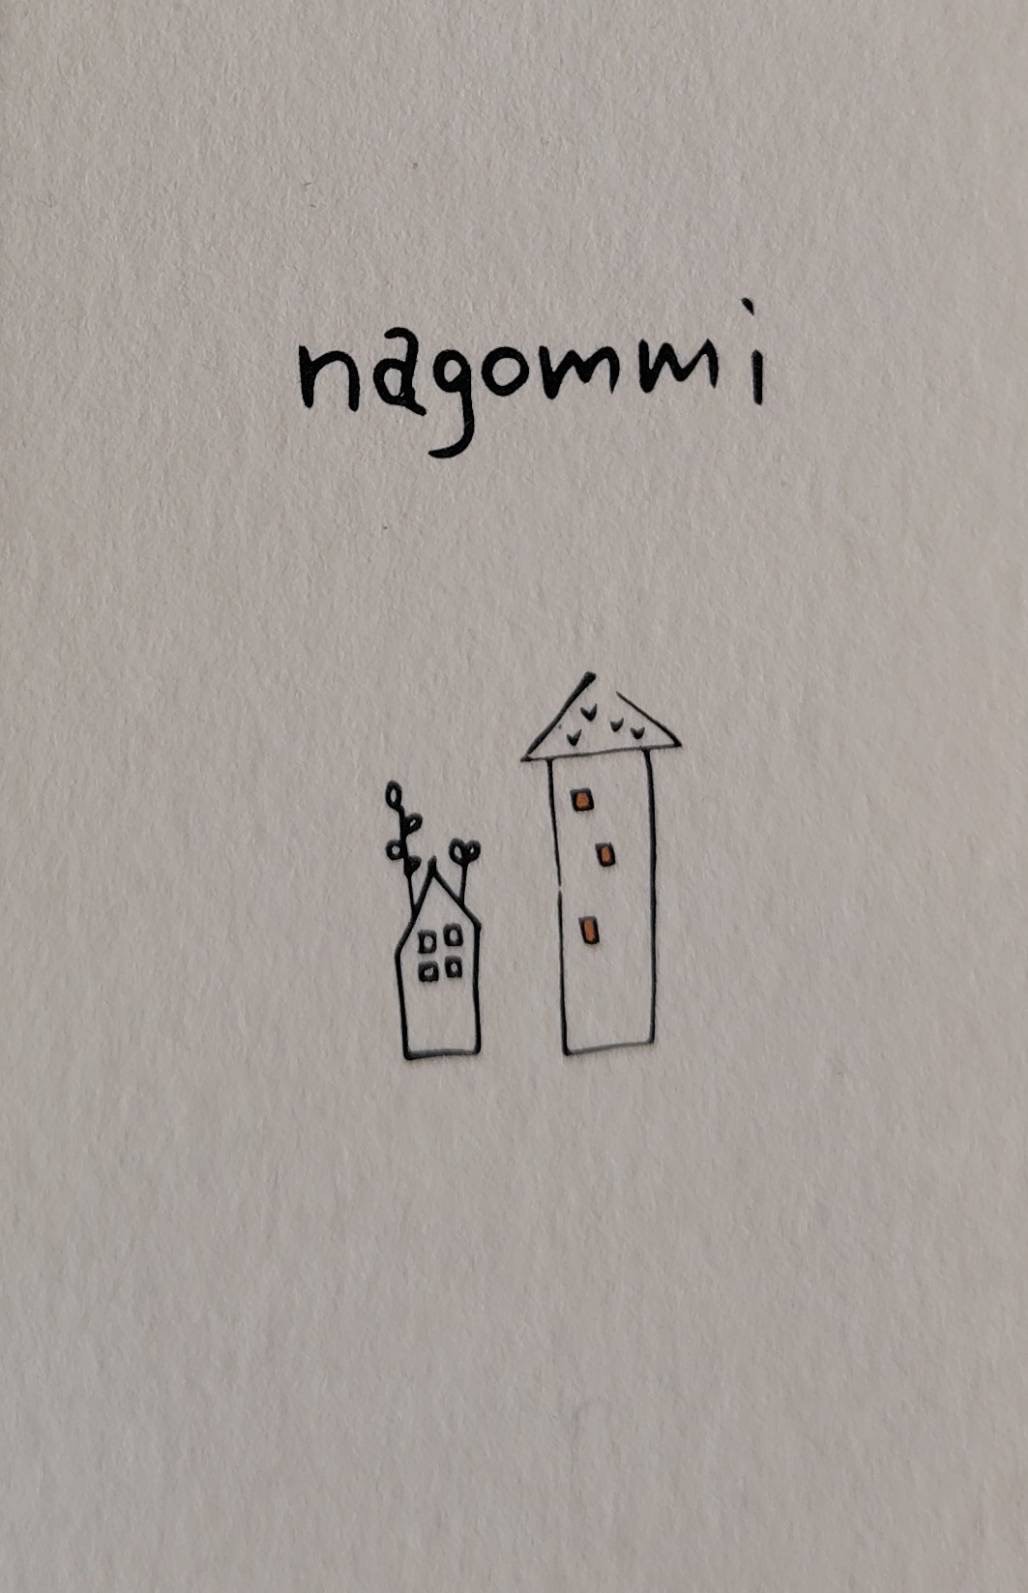 nagommi